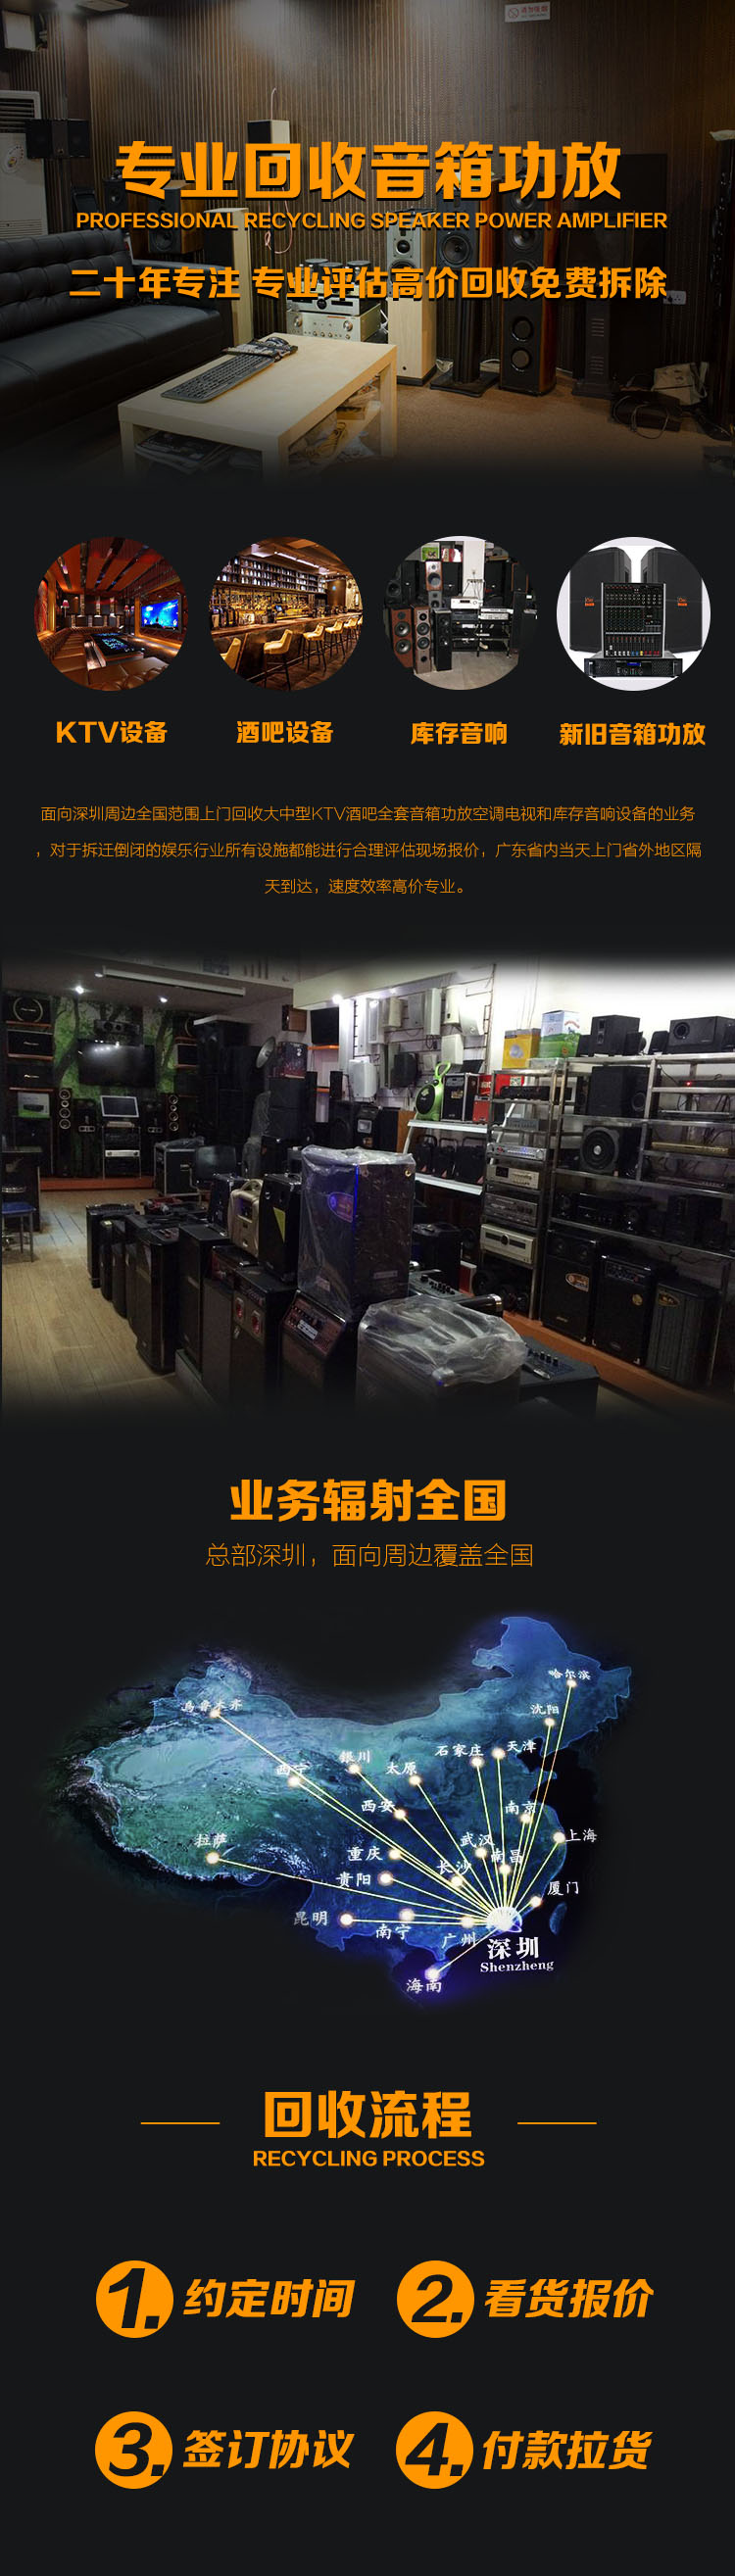 深圳音响设备回收KTV设备回收